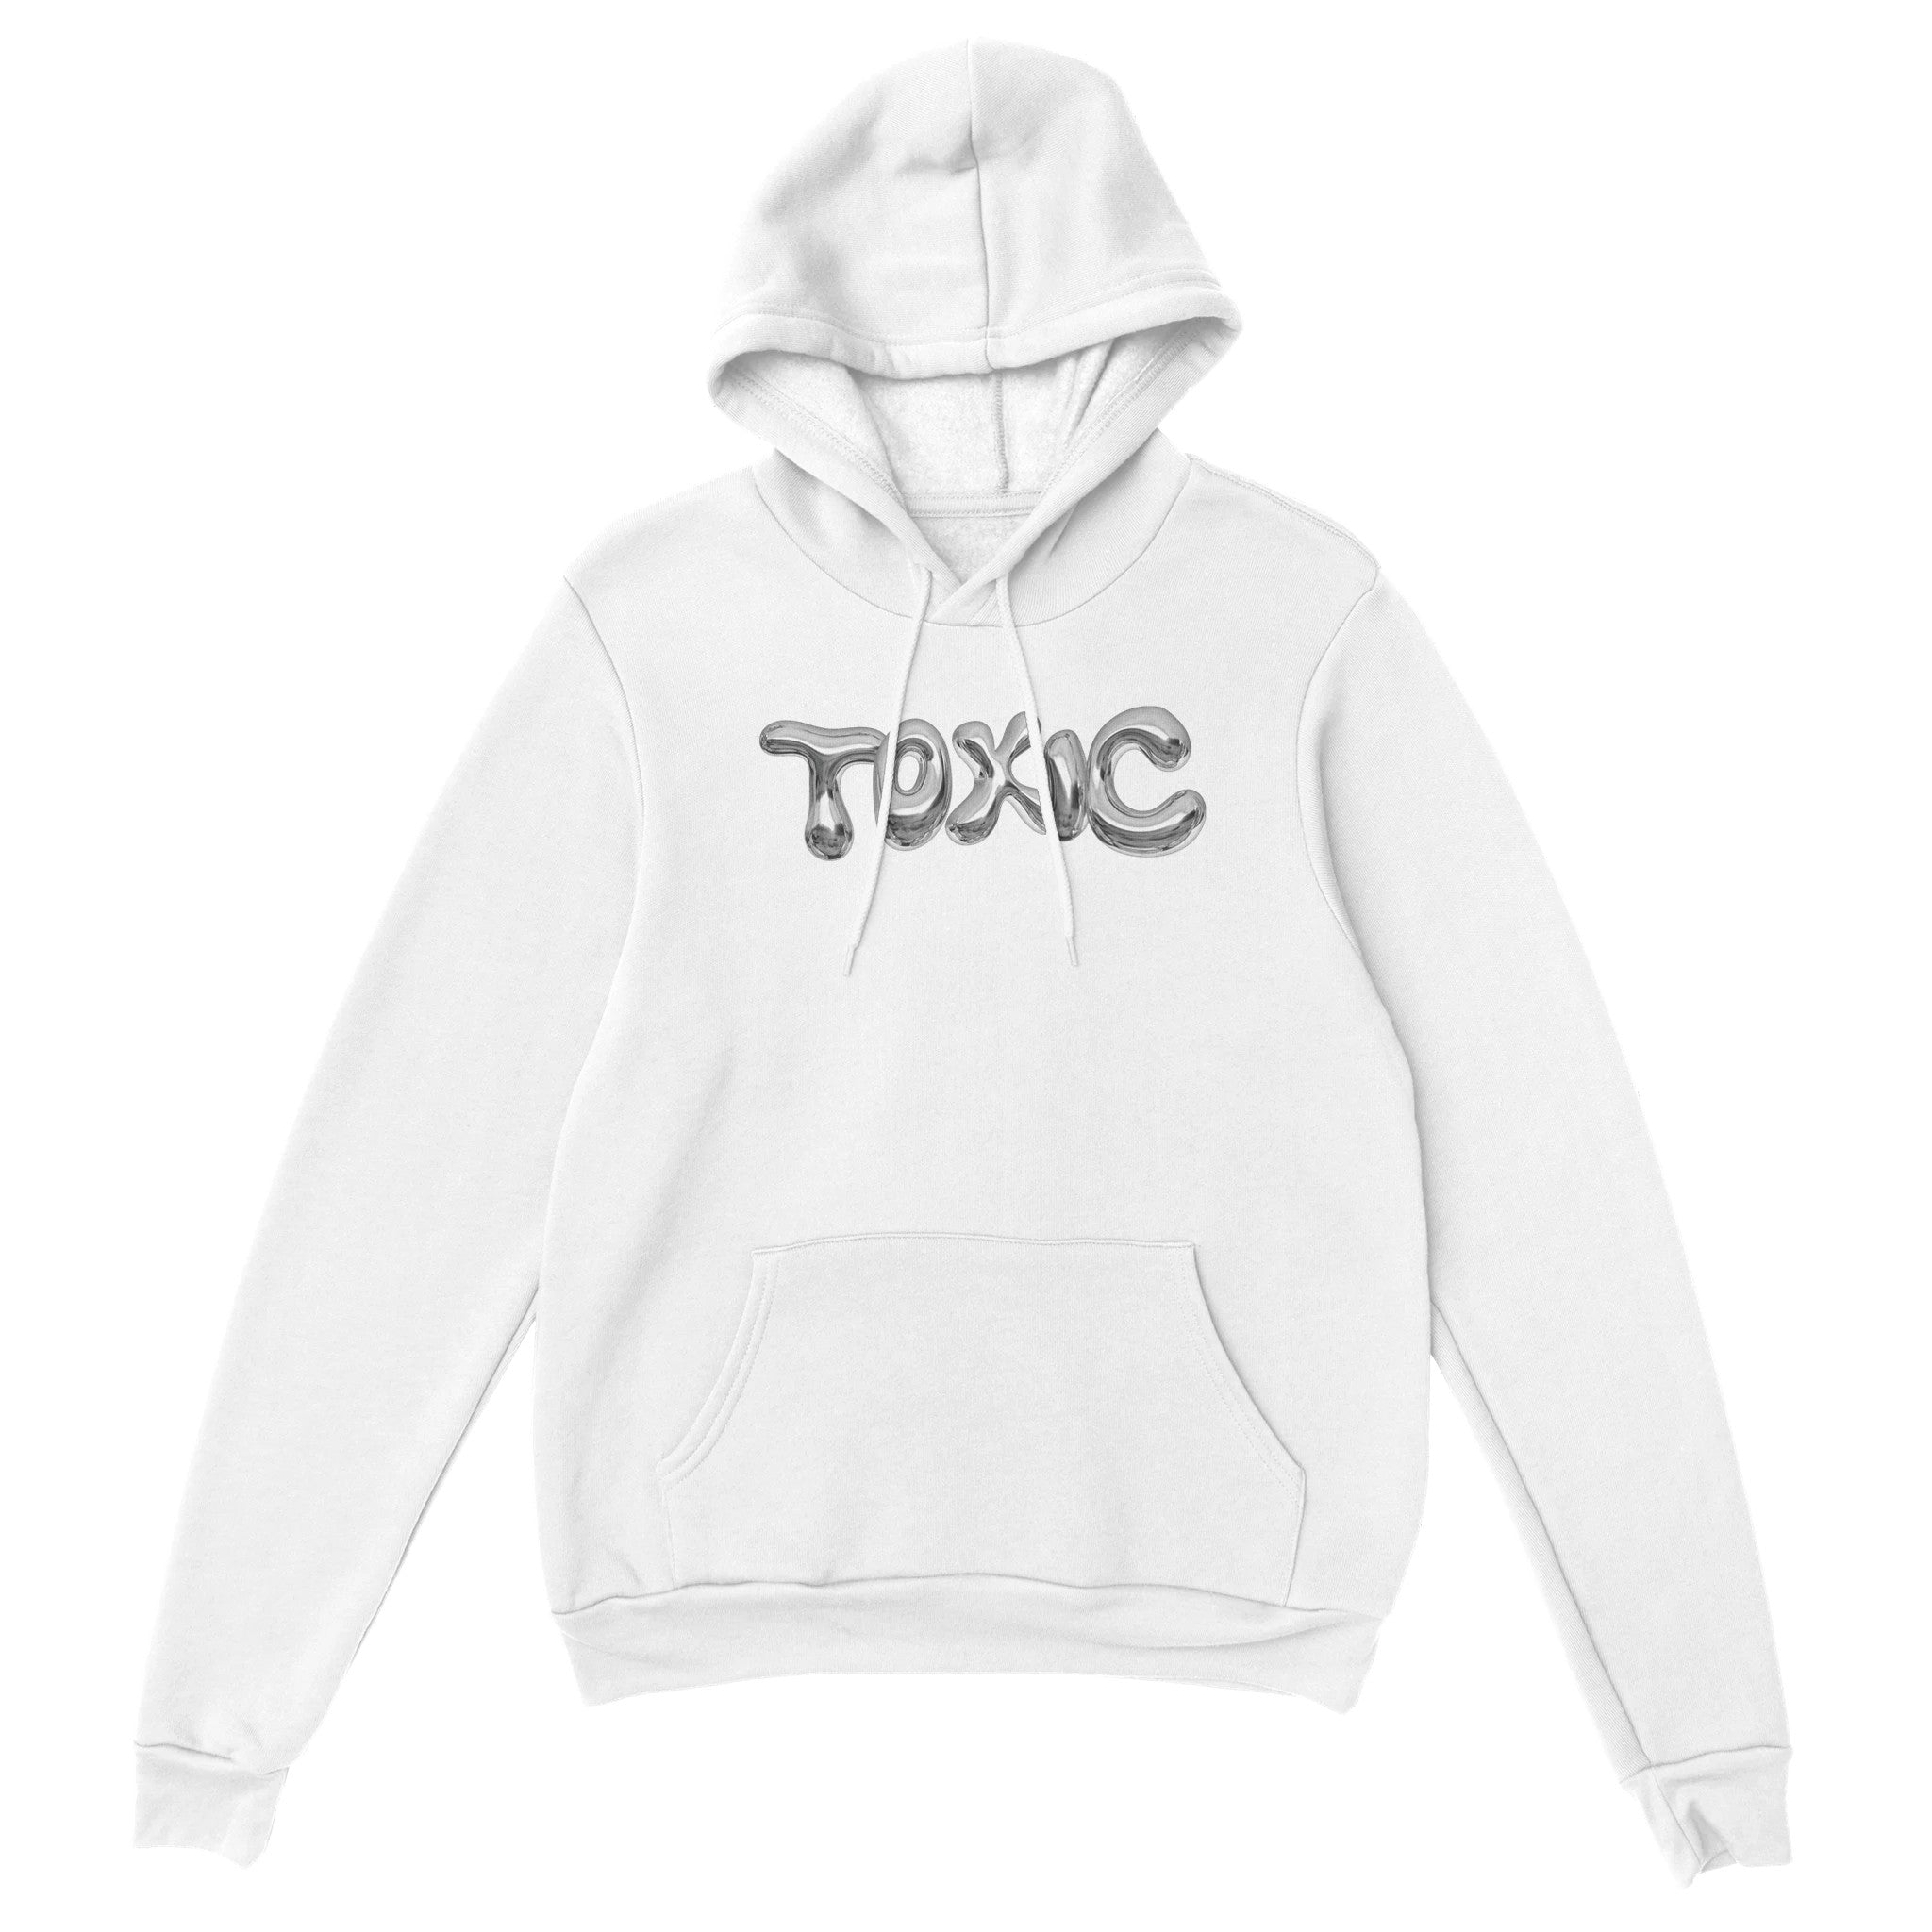 'Toxic' hoodie - In Print We Trust